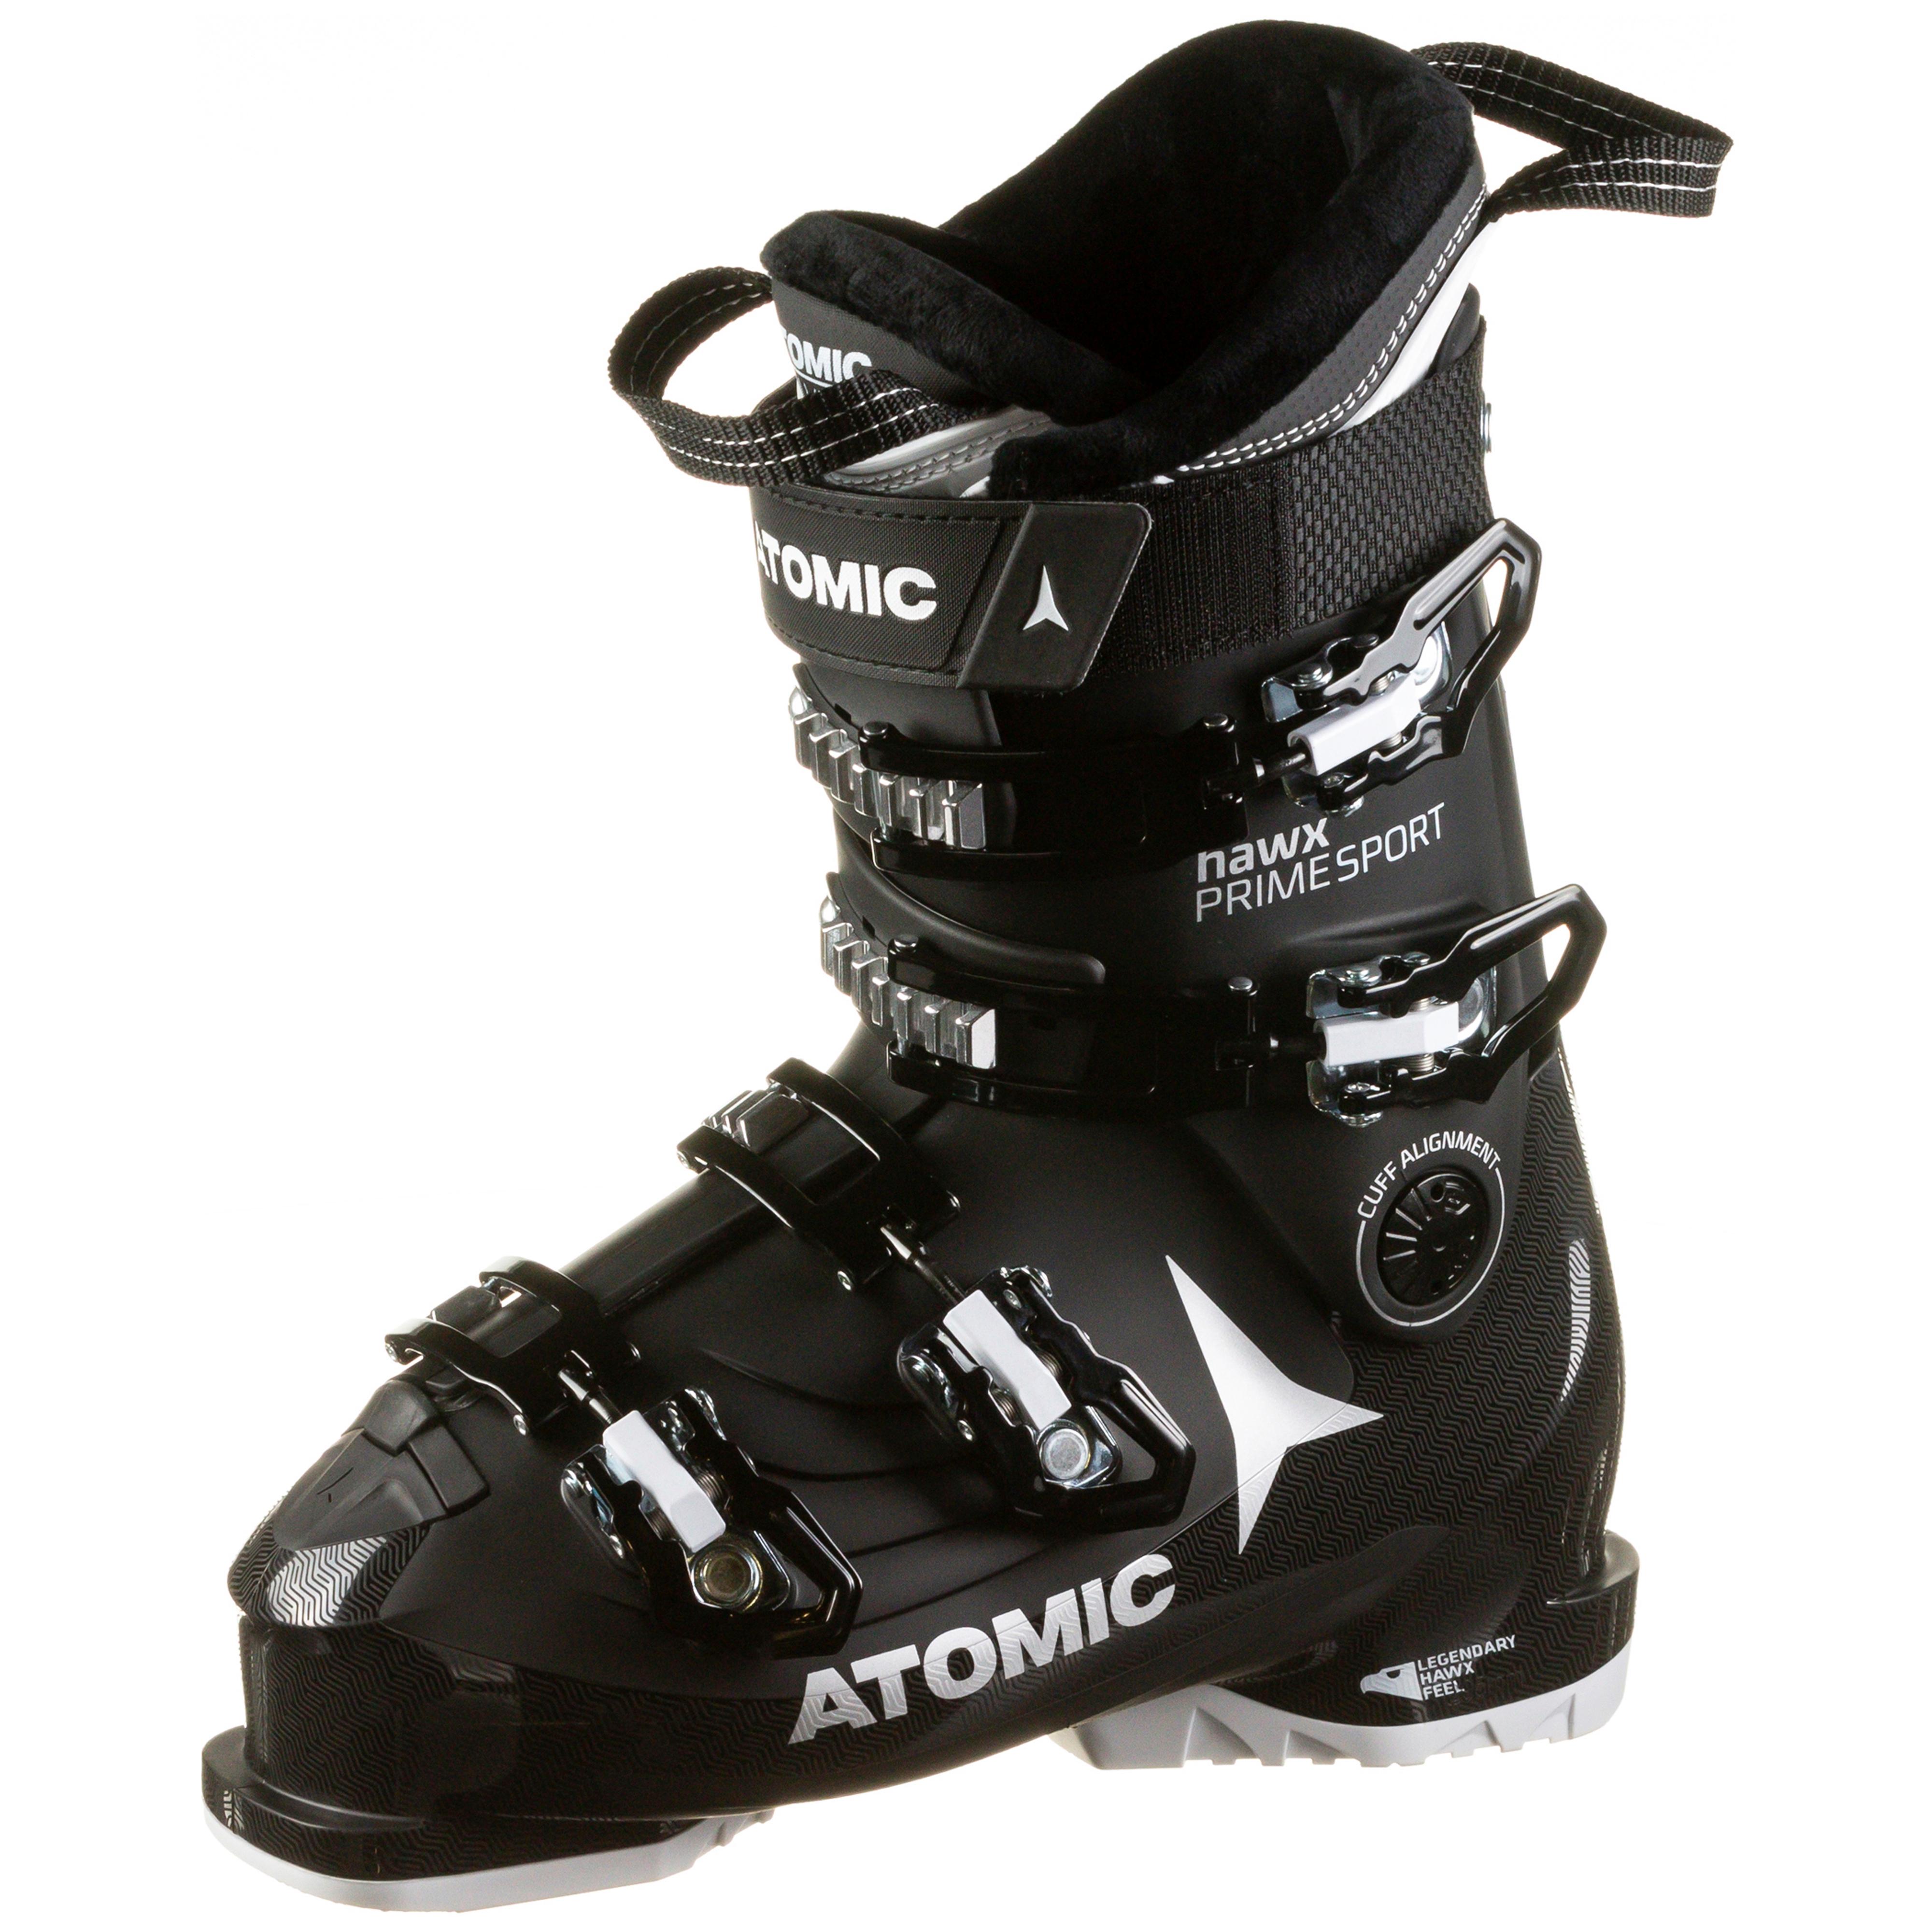 molecuul Ontmoedigen Fietstaxi ATOMIC HAWX PRIME SPORT 90W Skischuhe Damen black im Online Shop von  SportScheck kaufen